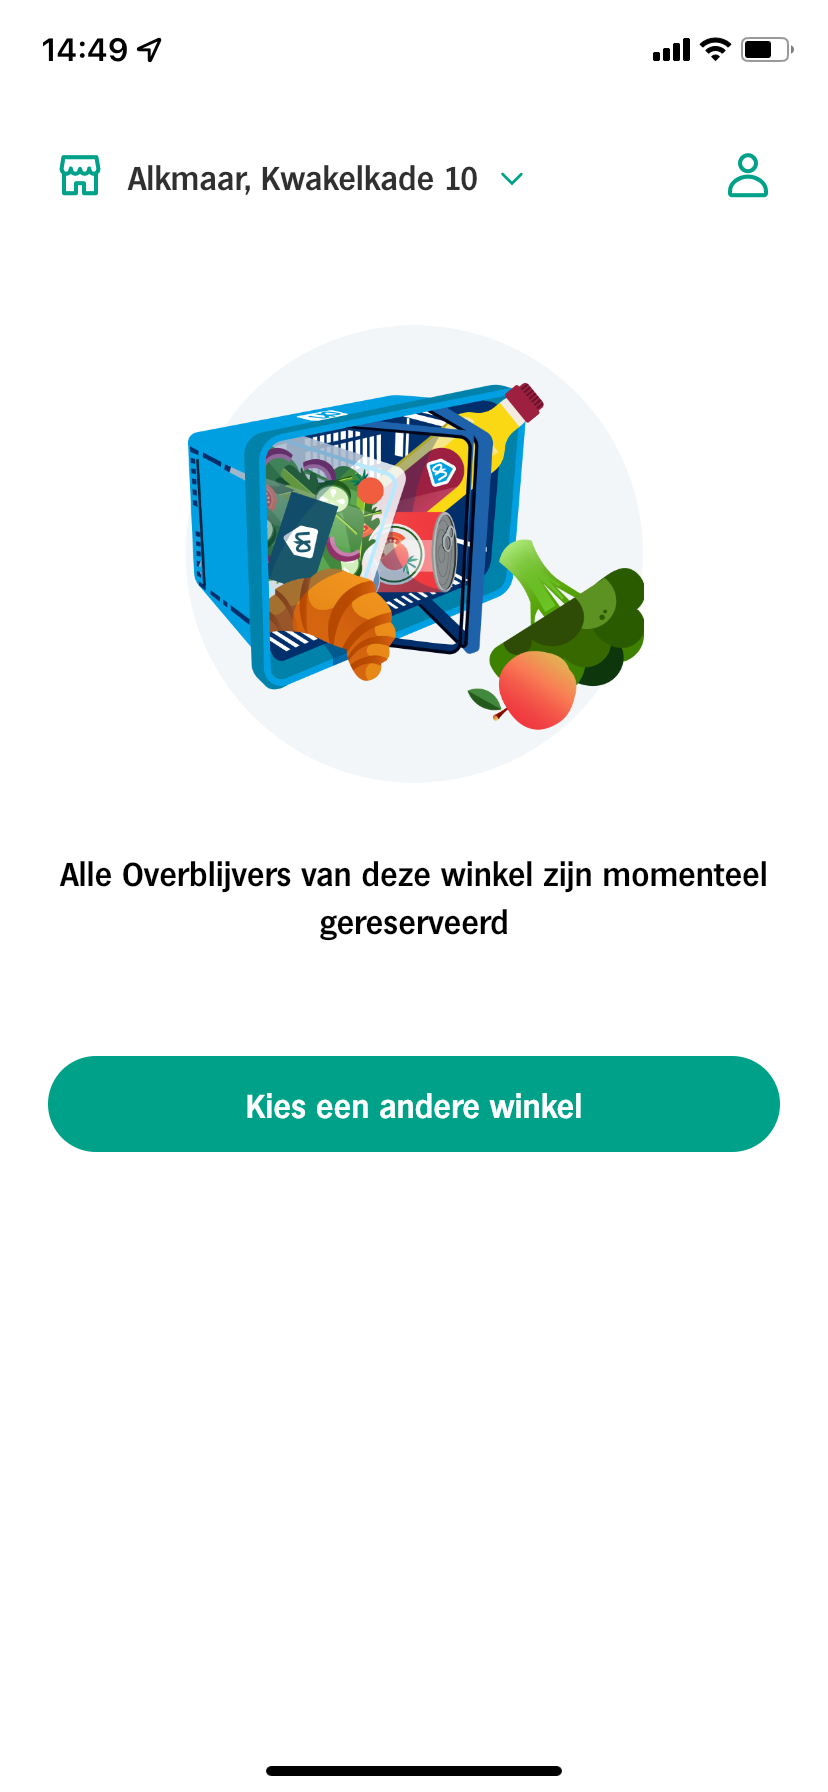 Overblijvers app_Albert Heijn_verspilling_budgettip_mamablogger_